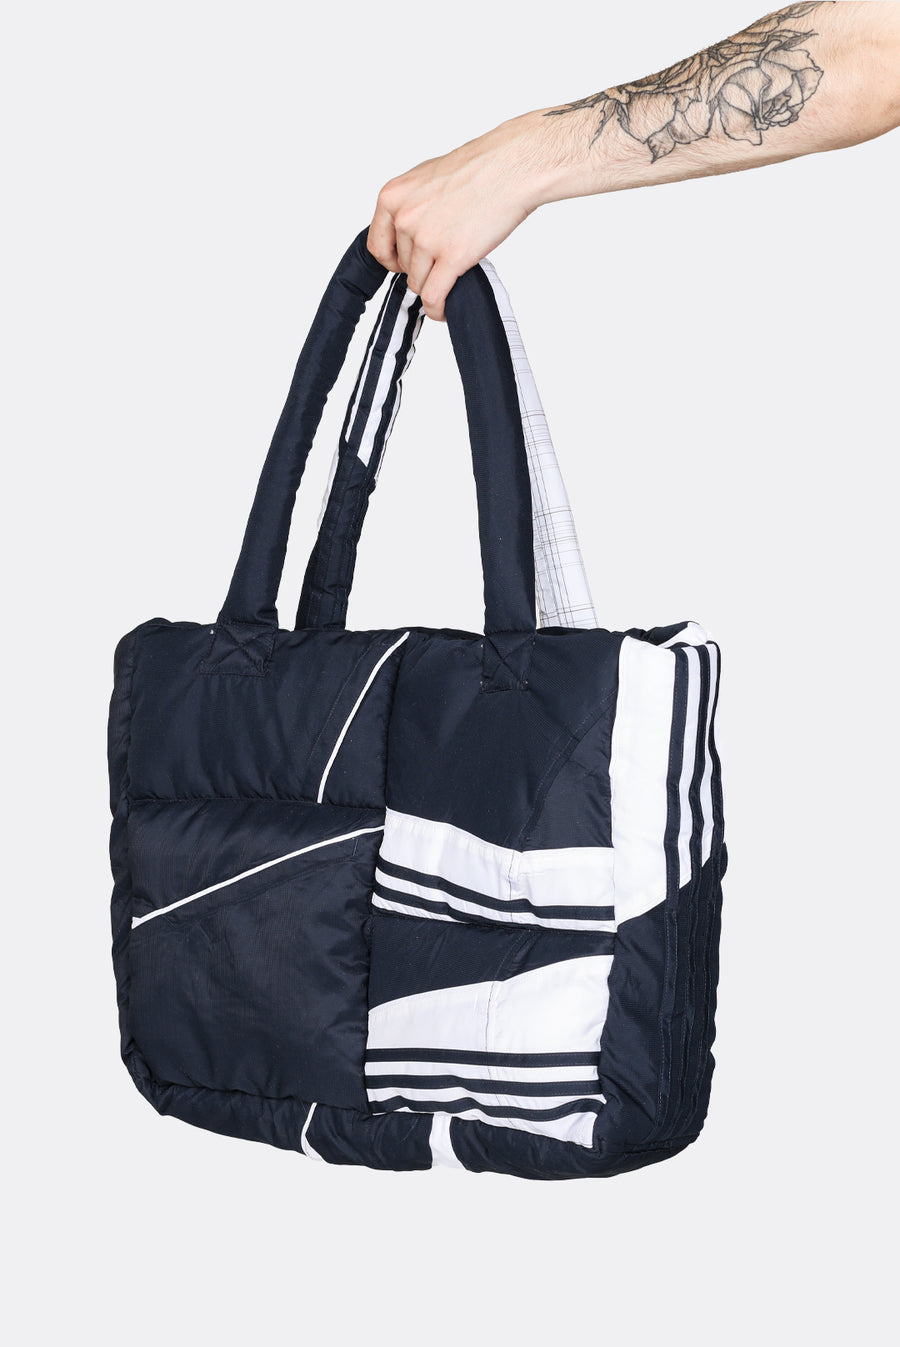 Rework Adidas Puffer Tote Bag